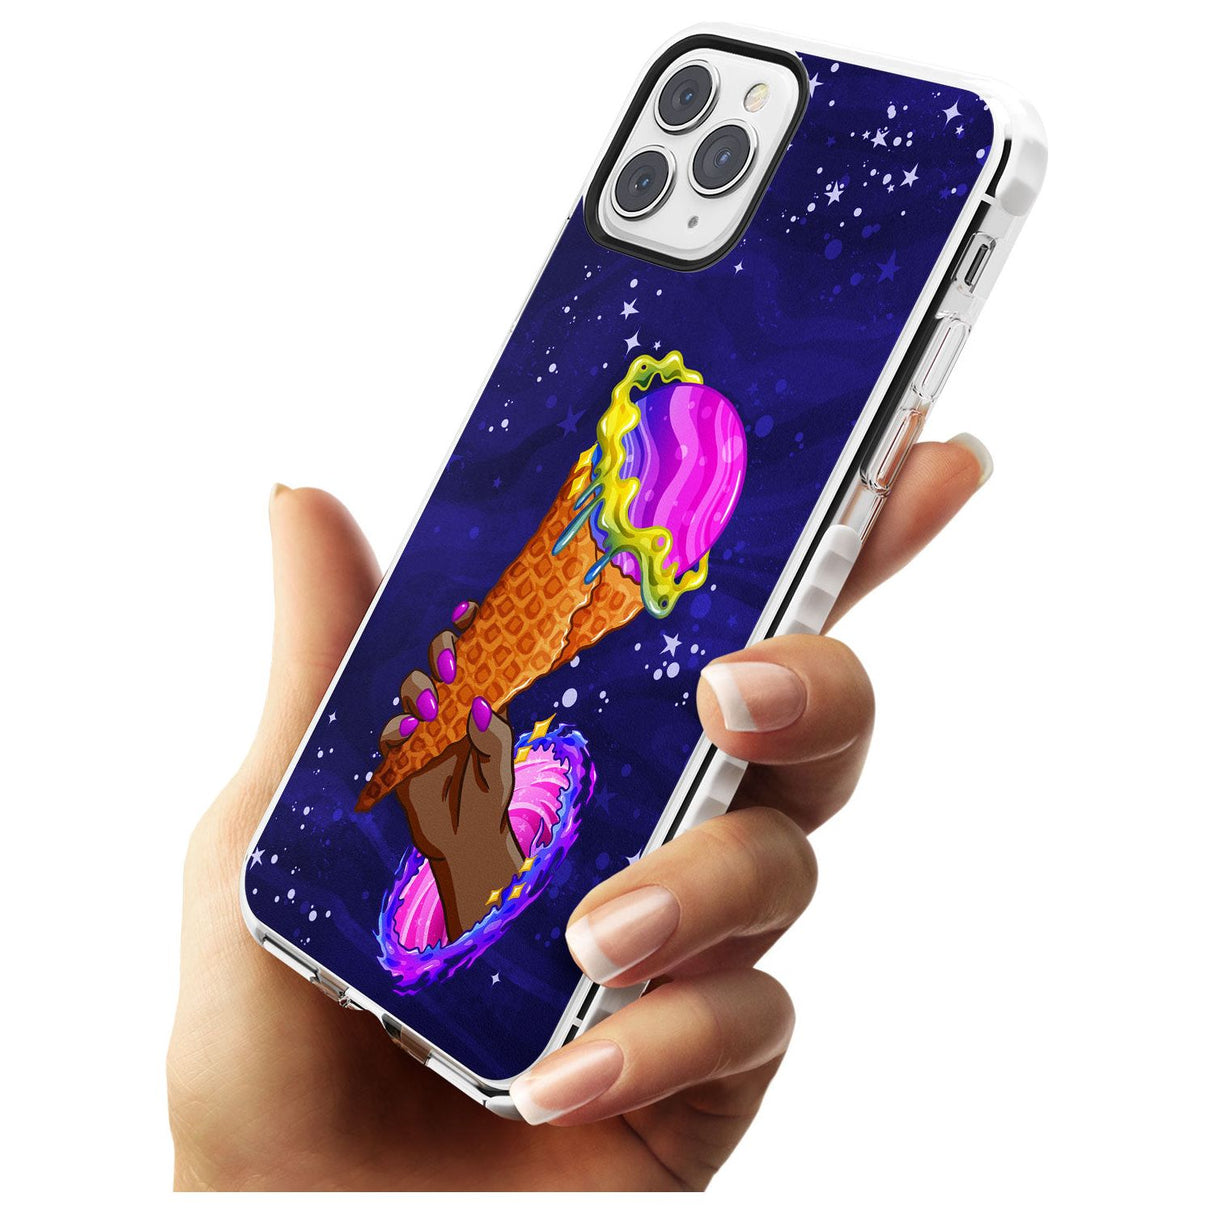 Interdimensional Ice Cream Impact Phone Case for iPhone 11 Pro Max